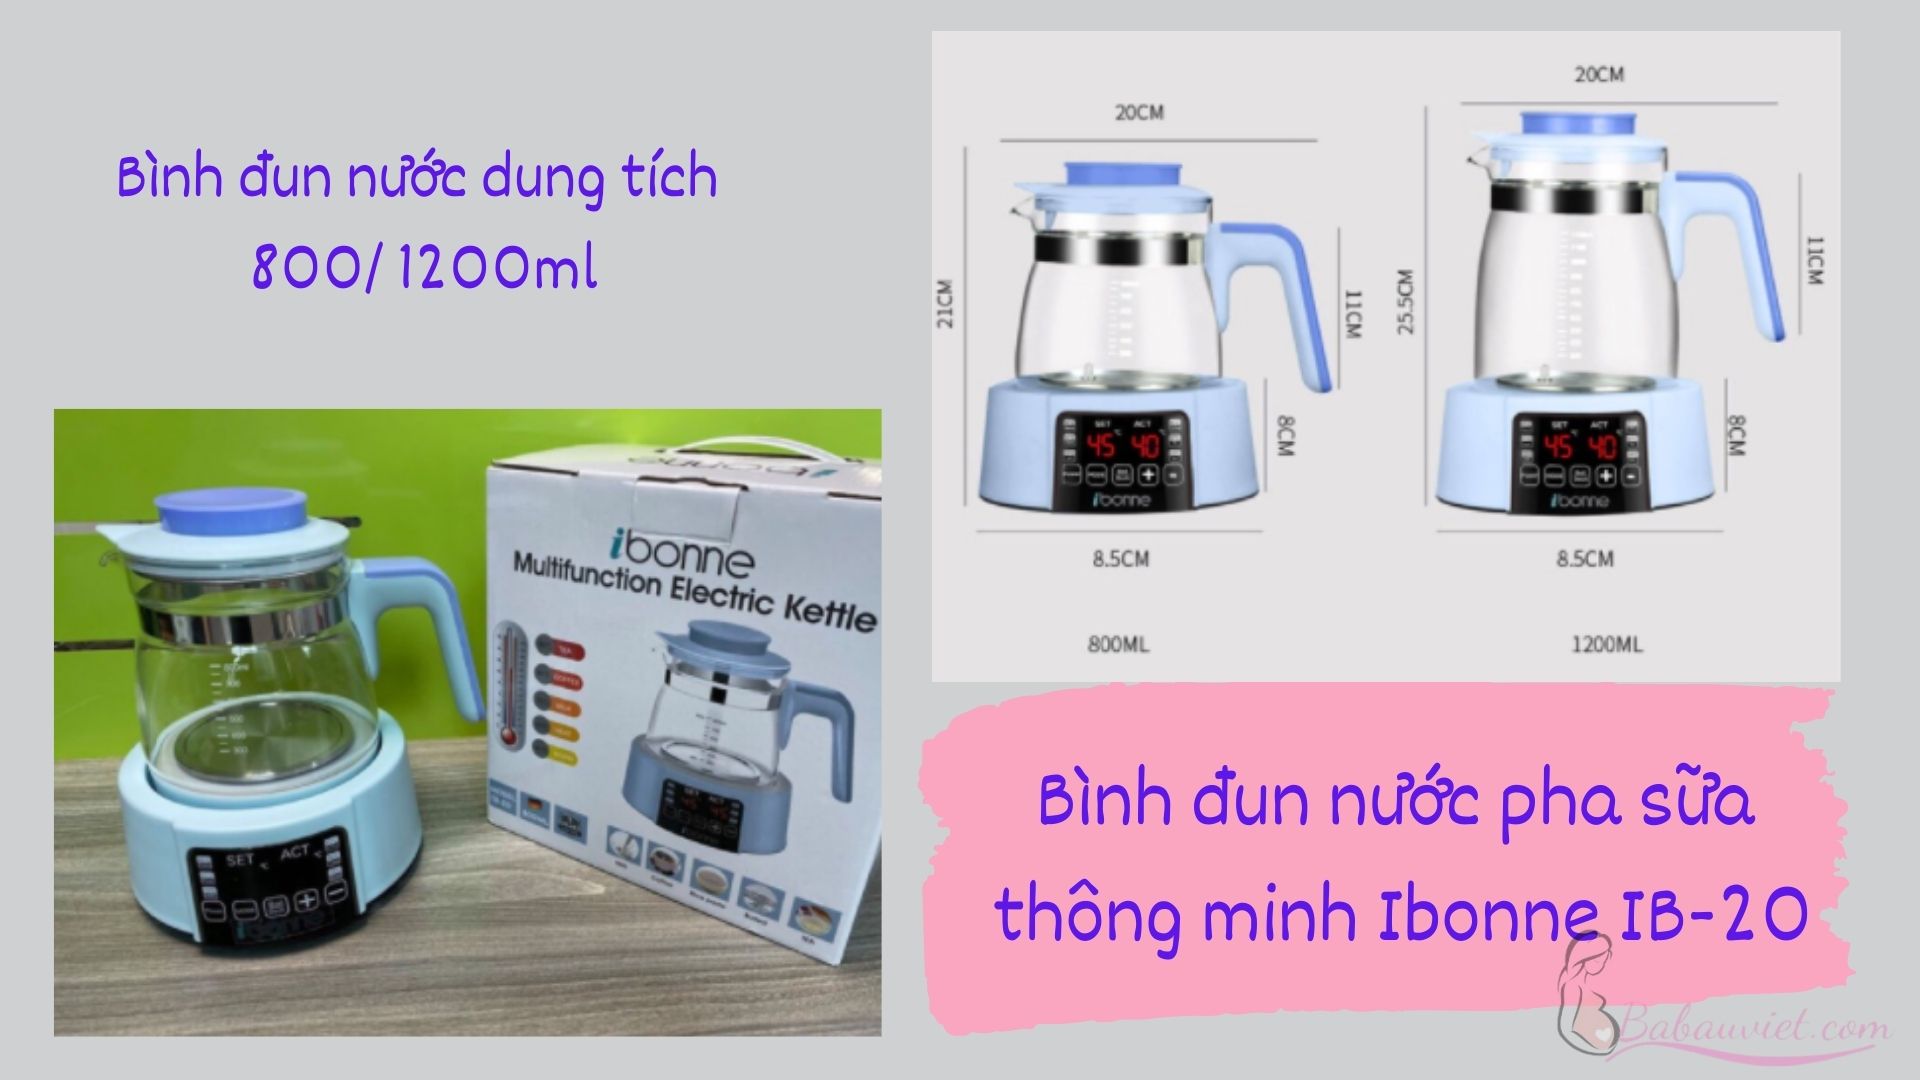 Bình đun nước pha sữa cho bé Ibonne IB-20